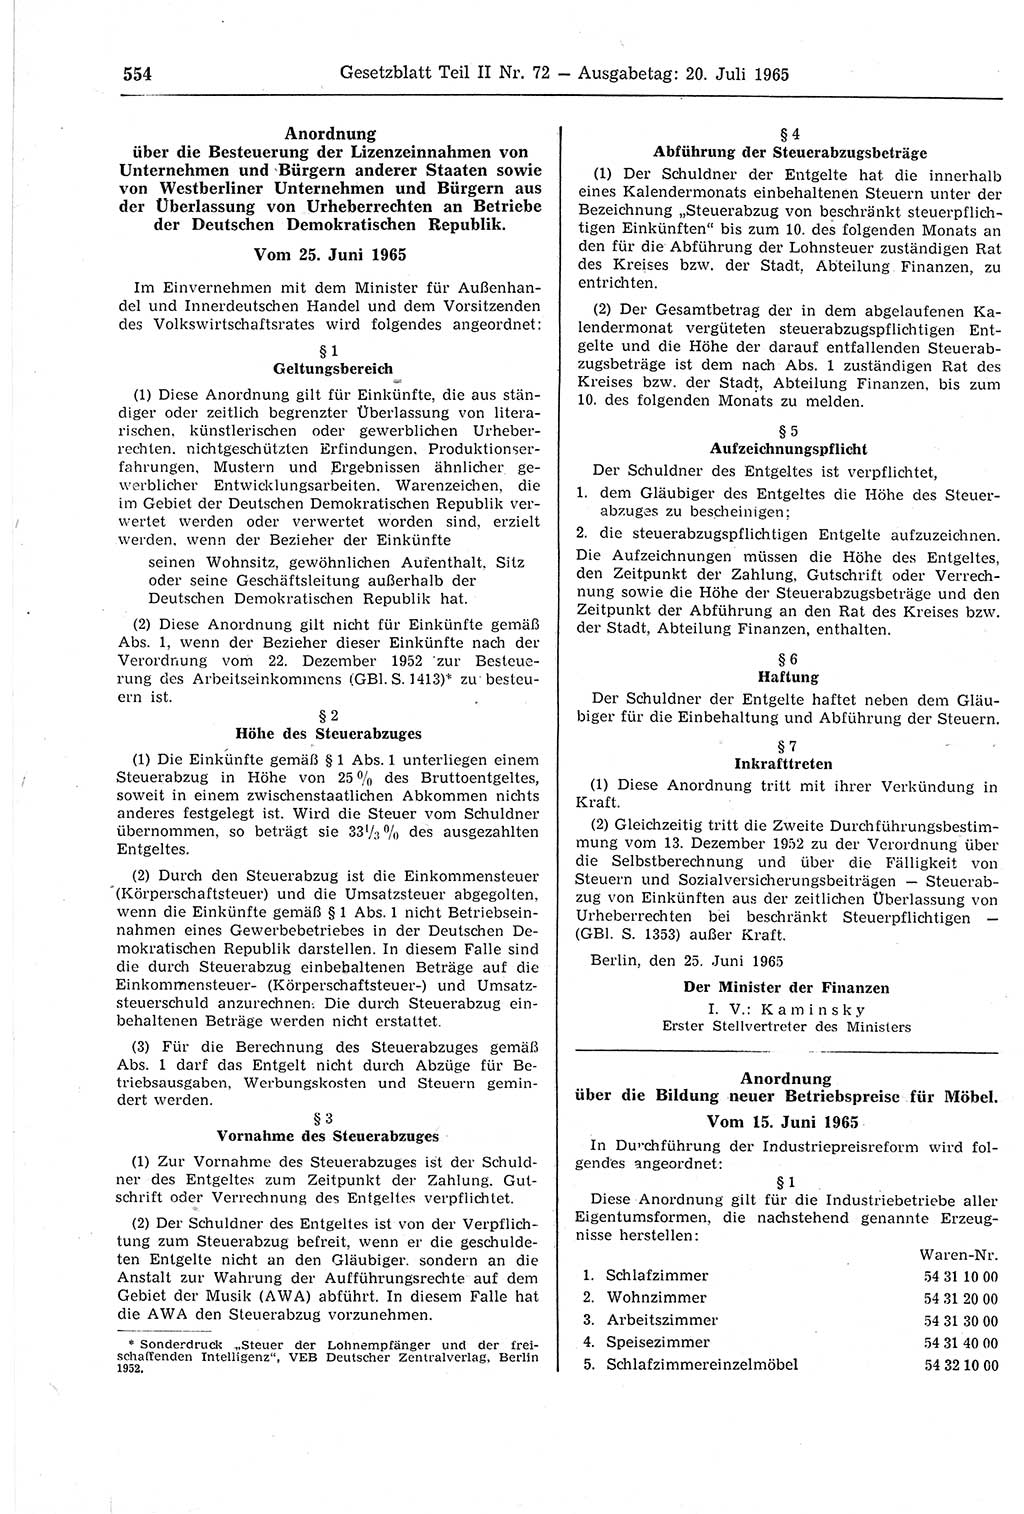 Gesetzblatt (GBl.) der Deutschen Demokratischen Republik (DDR) Teil ⅠⅠ 1965, Seite 554 (GBl. DDR ⅠⅠ 1965, S. 554)